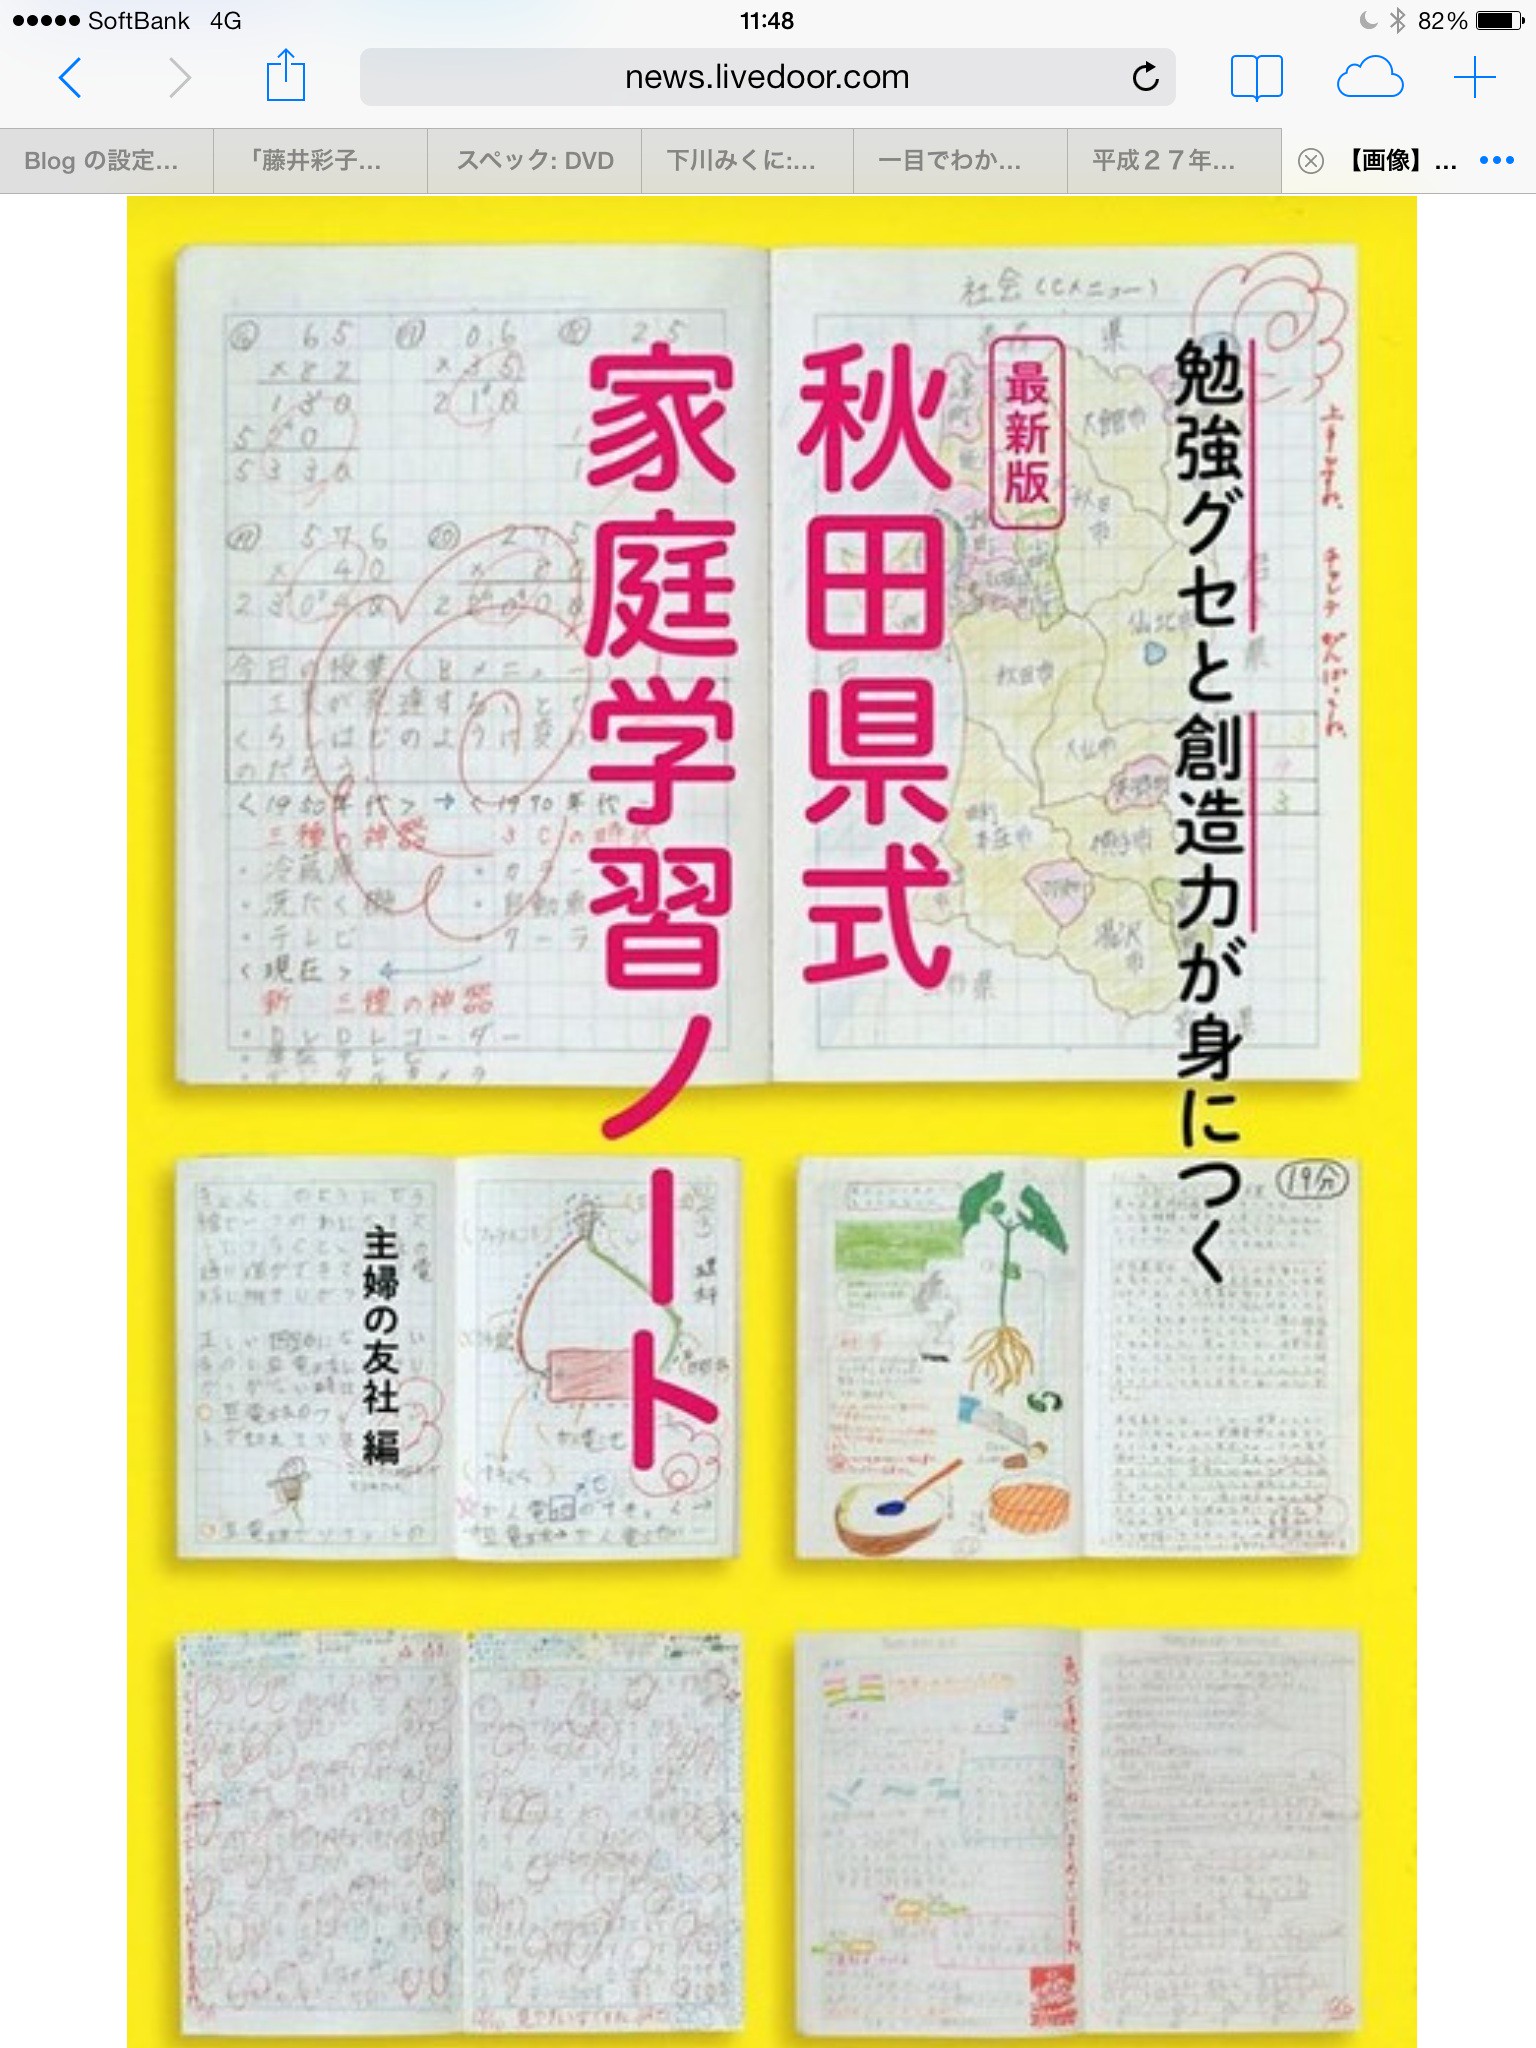 夏休みのおすすめの本 秋田県式 家庭学習ノート で勉強しよう Popkimy